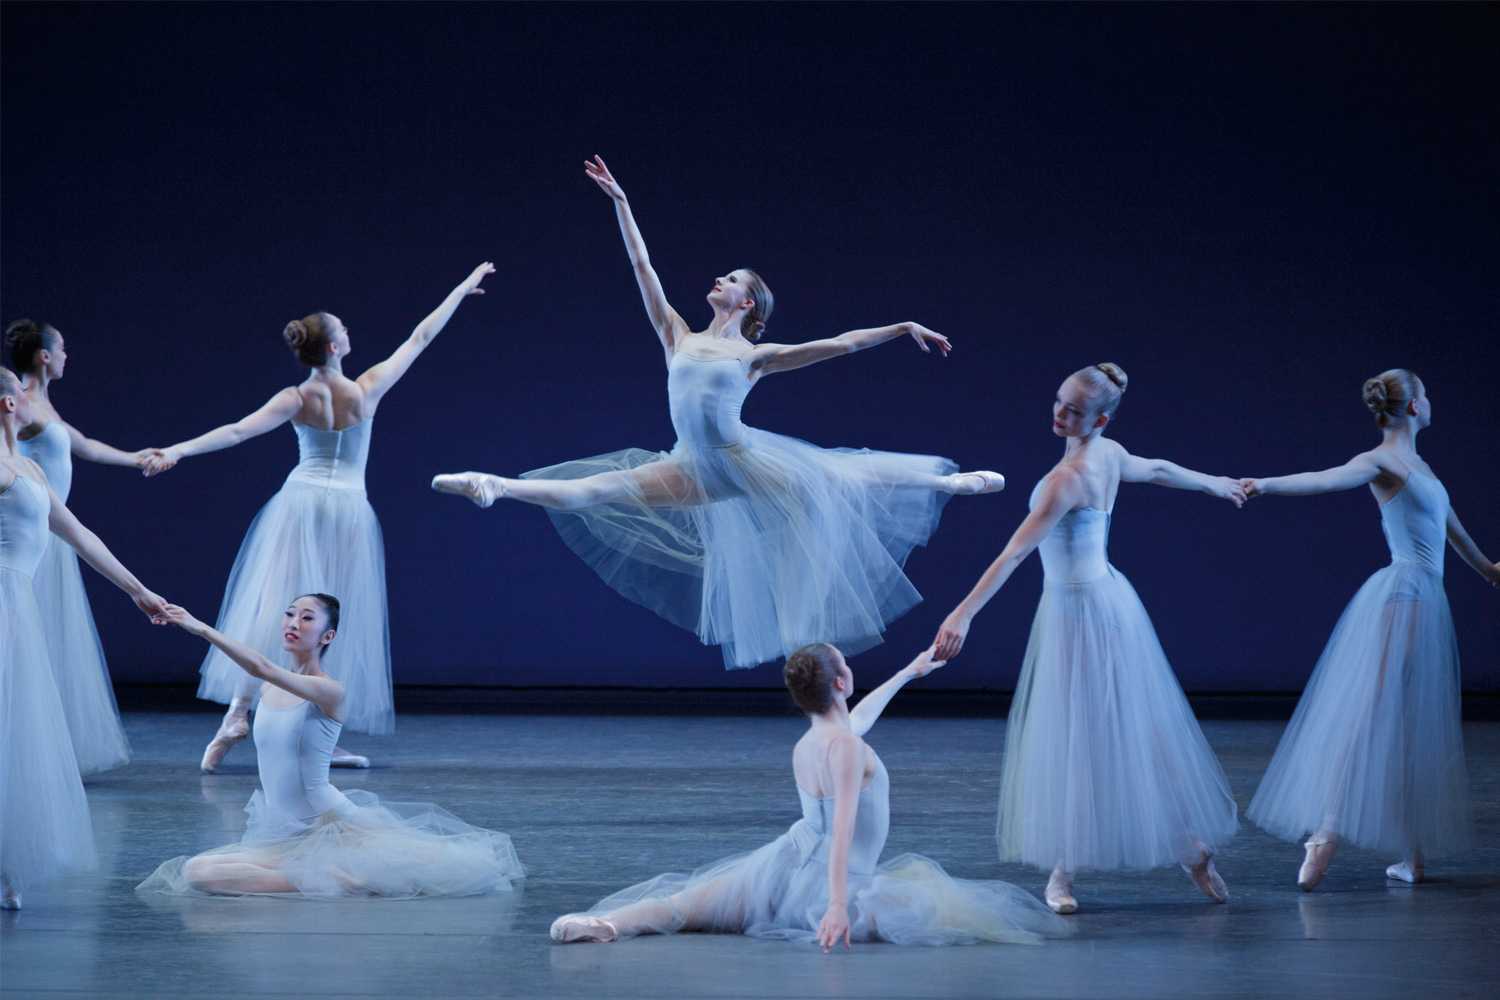 Позиции ног и рук в классическом танце — основы классической хореографии